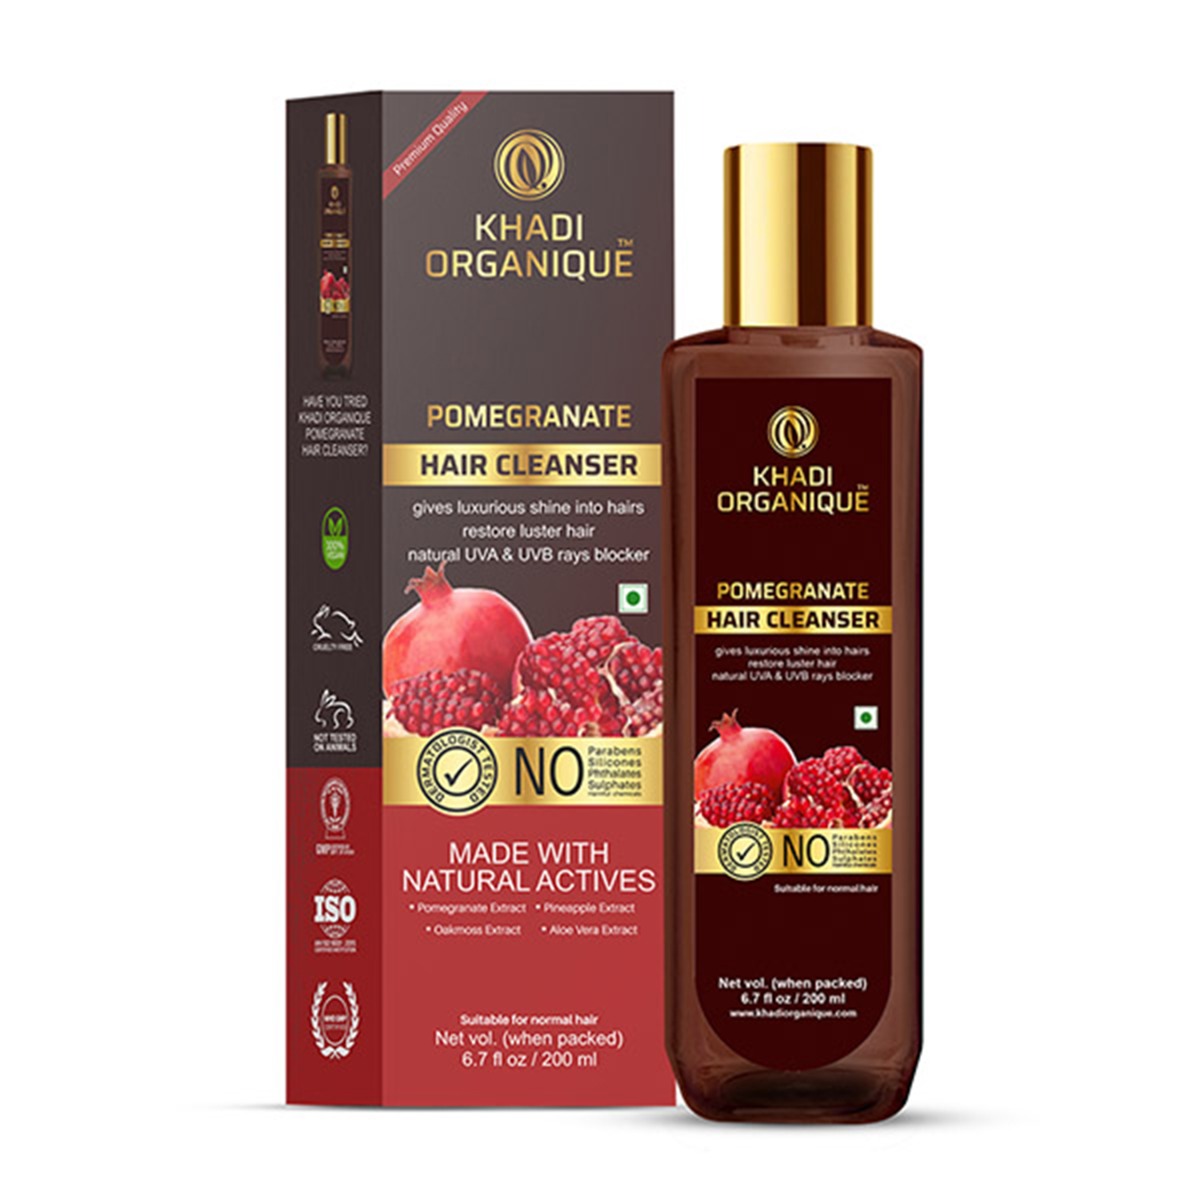 Khadi Organique Pomegranate Hair Cleanser, 200ml